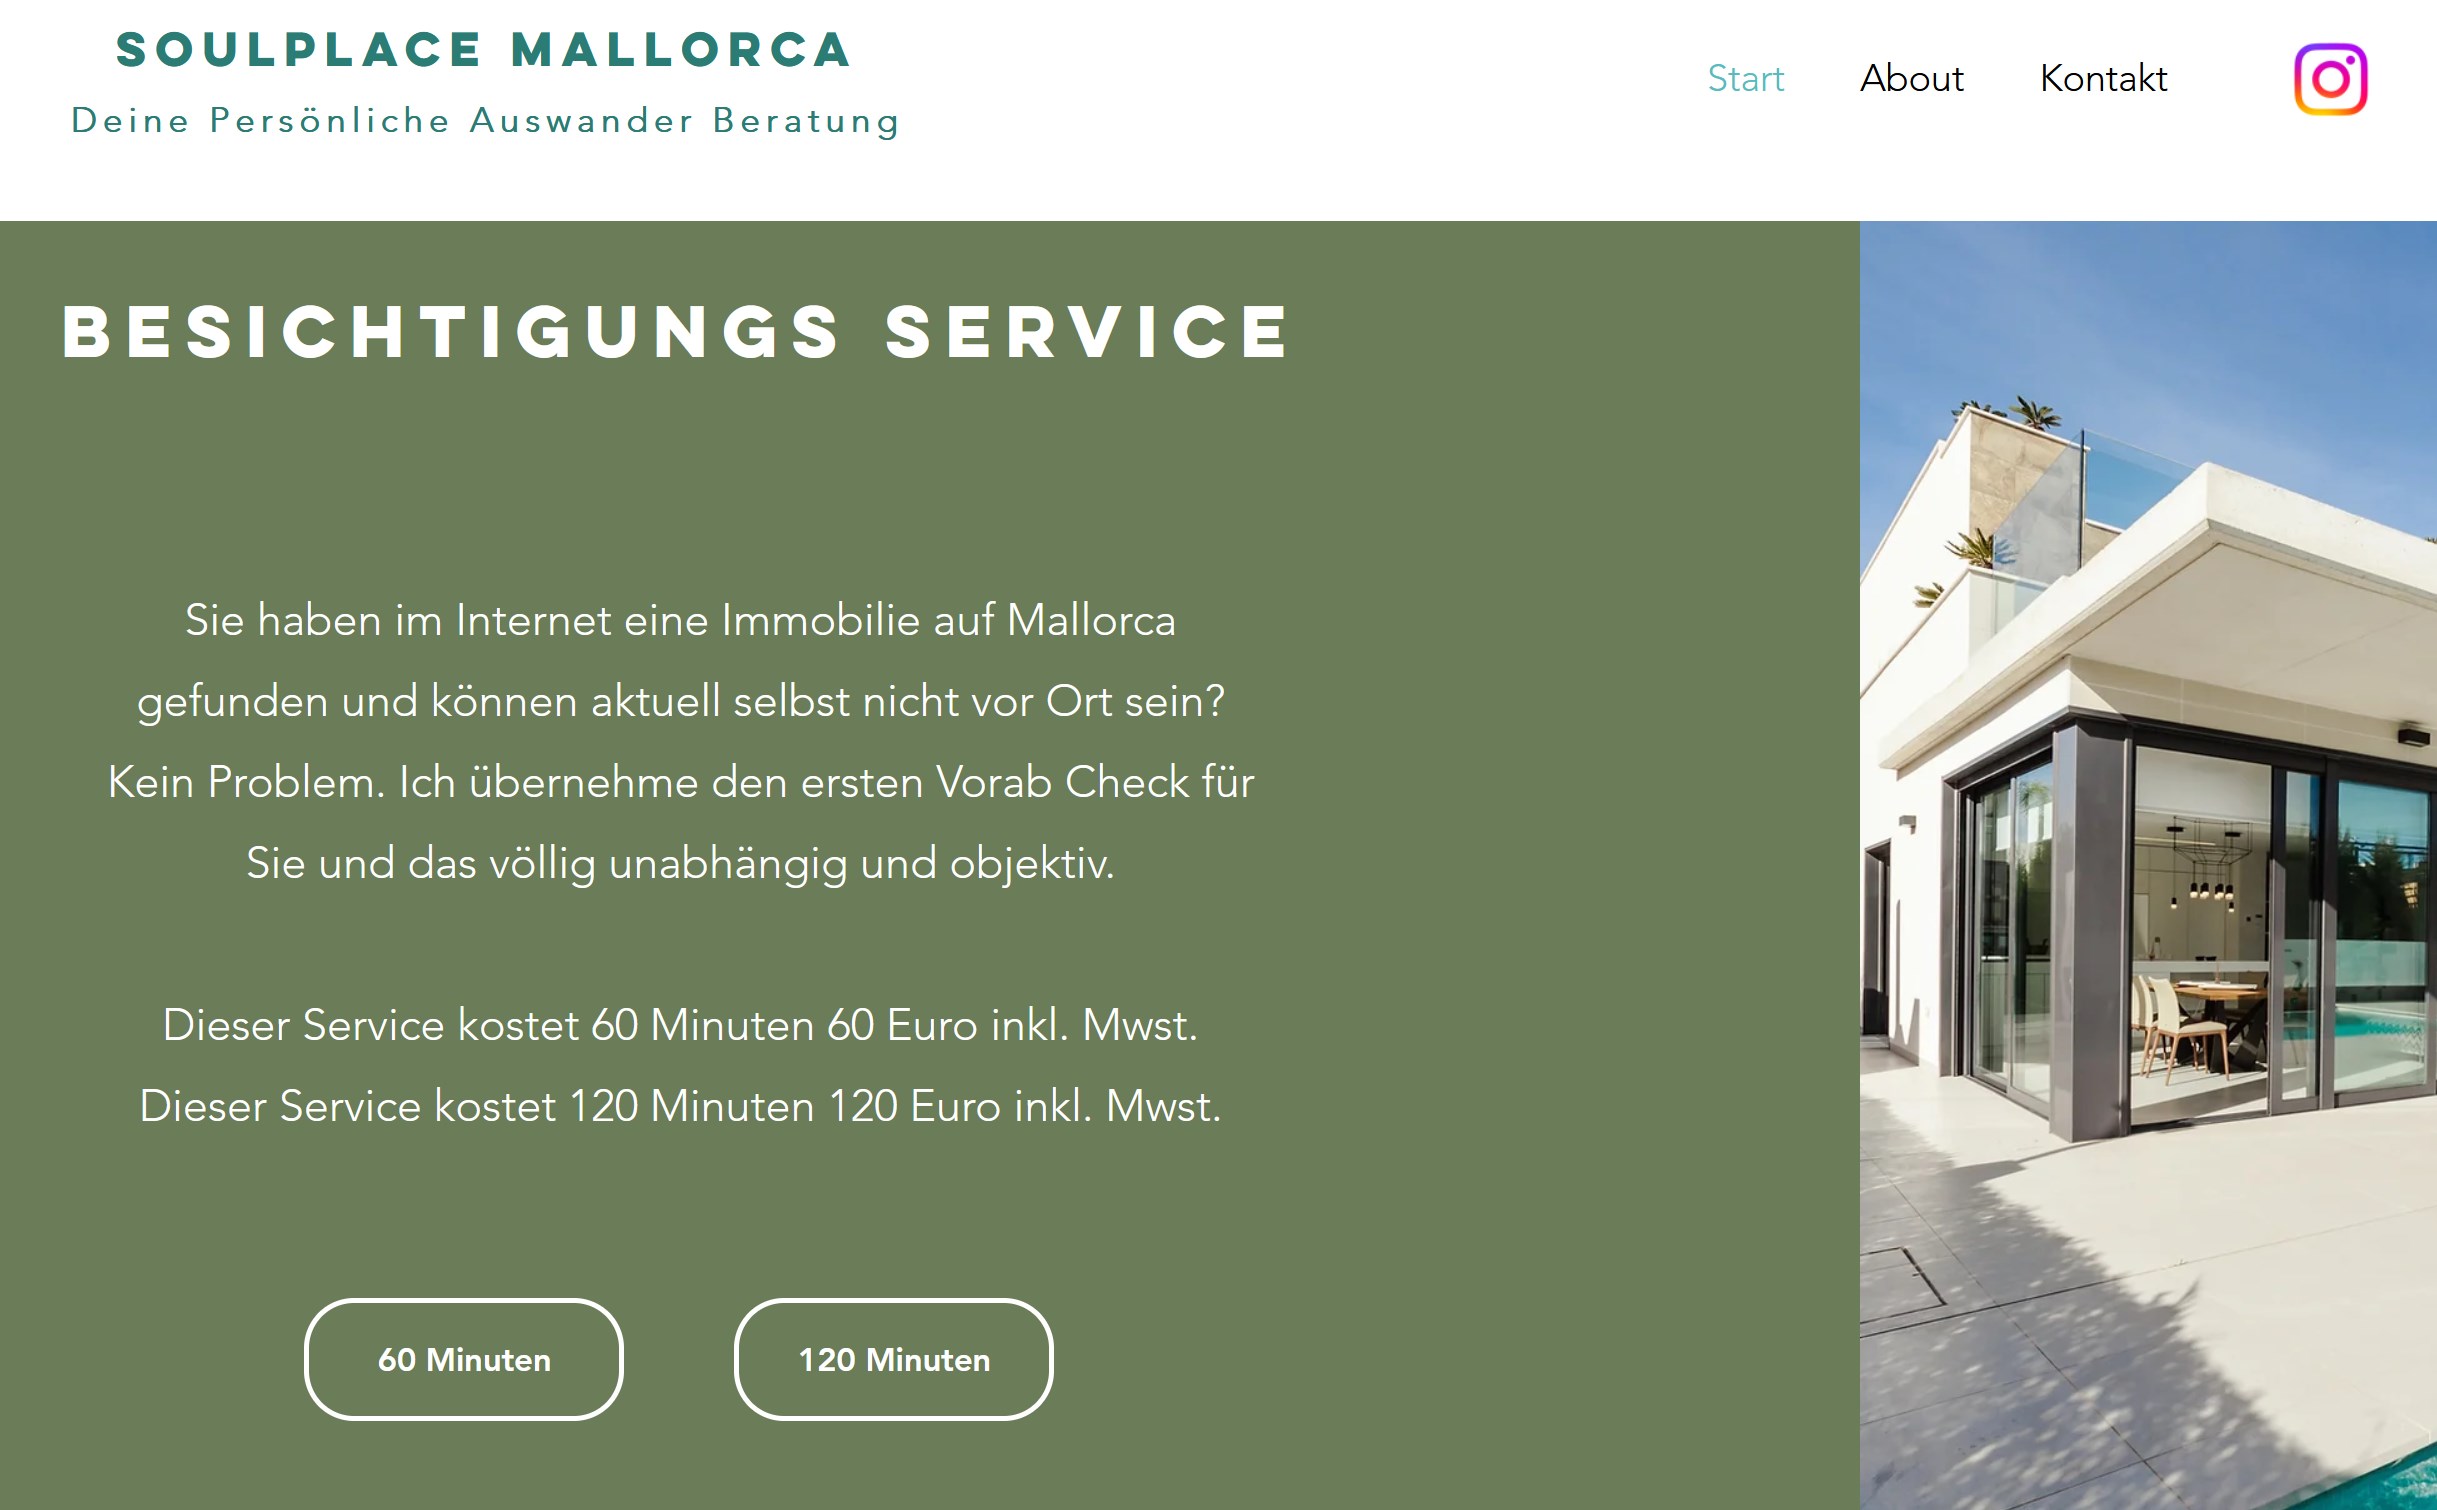 Soulplace Mallorca Auswander Beratung Betrügerin Bianca Döhring Luisa Doehring Immobilien Besichtigungs Service Hilfe Erfahrung Rat Tipps Spanien